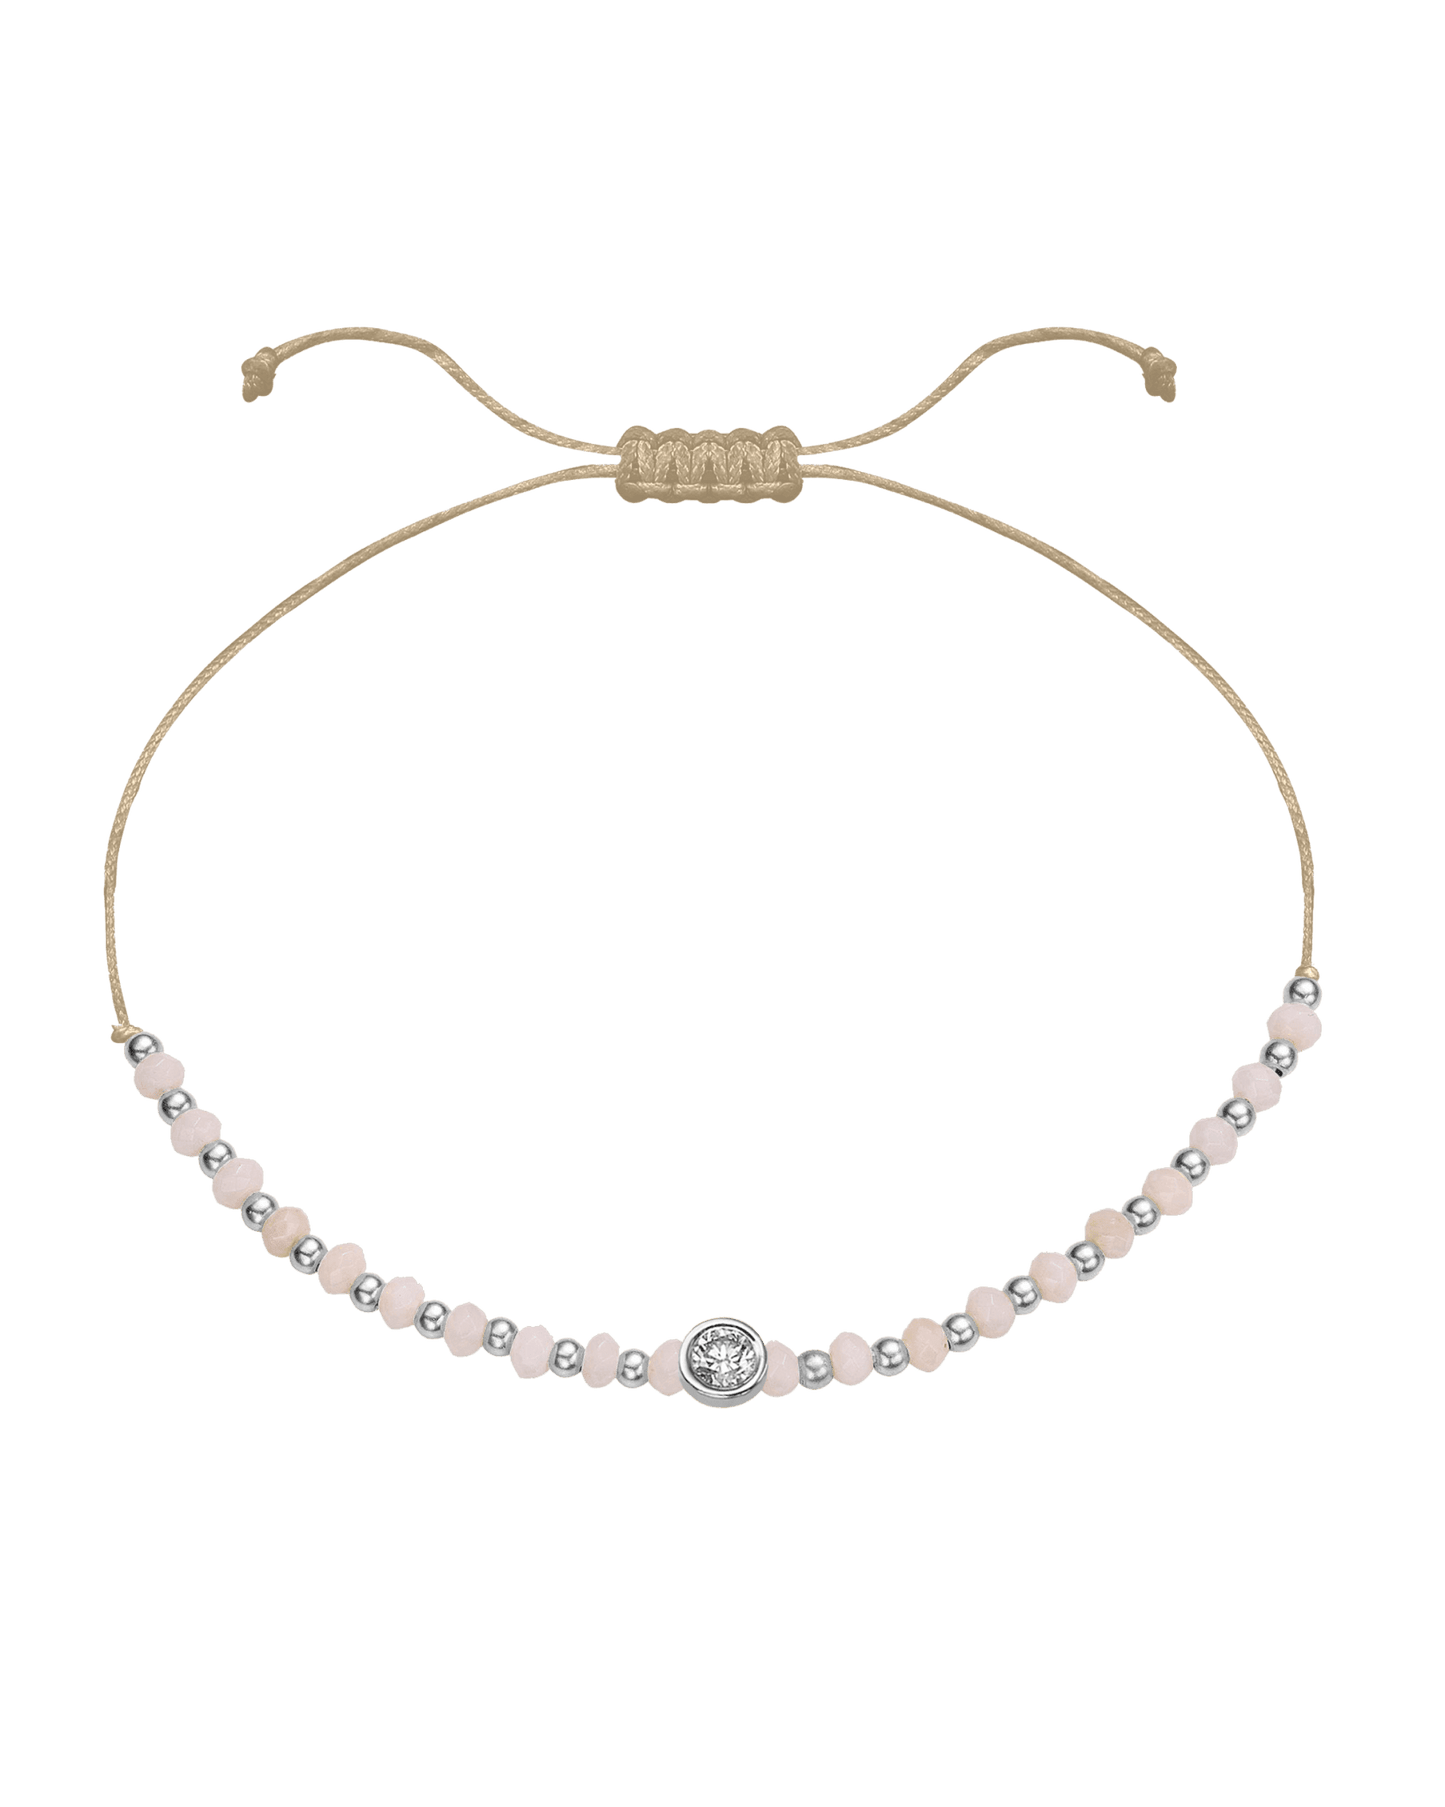 Rhodochrosite Gemstone String of Love Bracelet for Compassion - 14K White Gold Bracelet 14K Solid Gold Beige Large: 0.1ct 